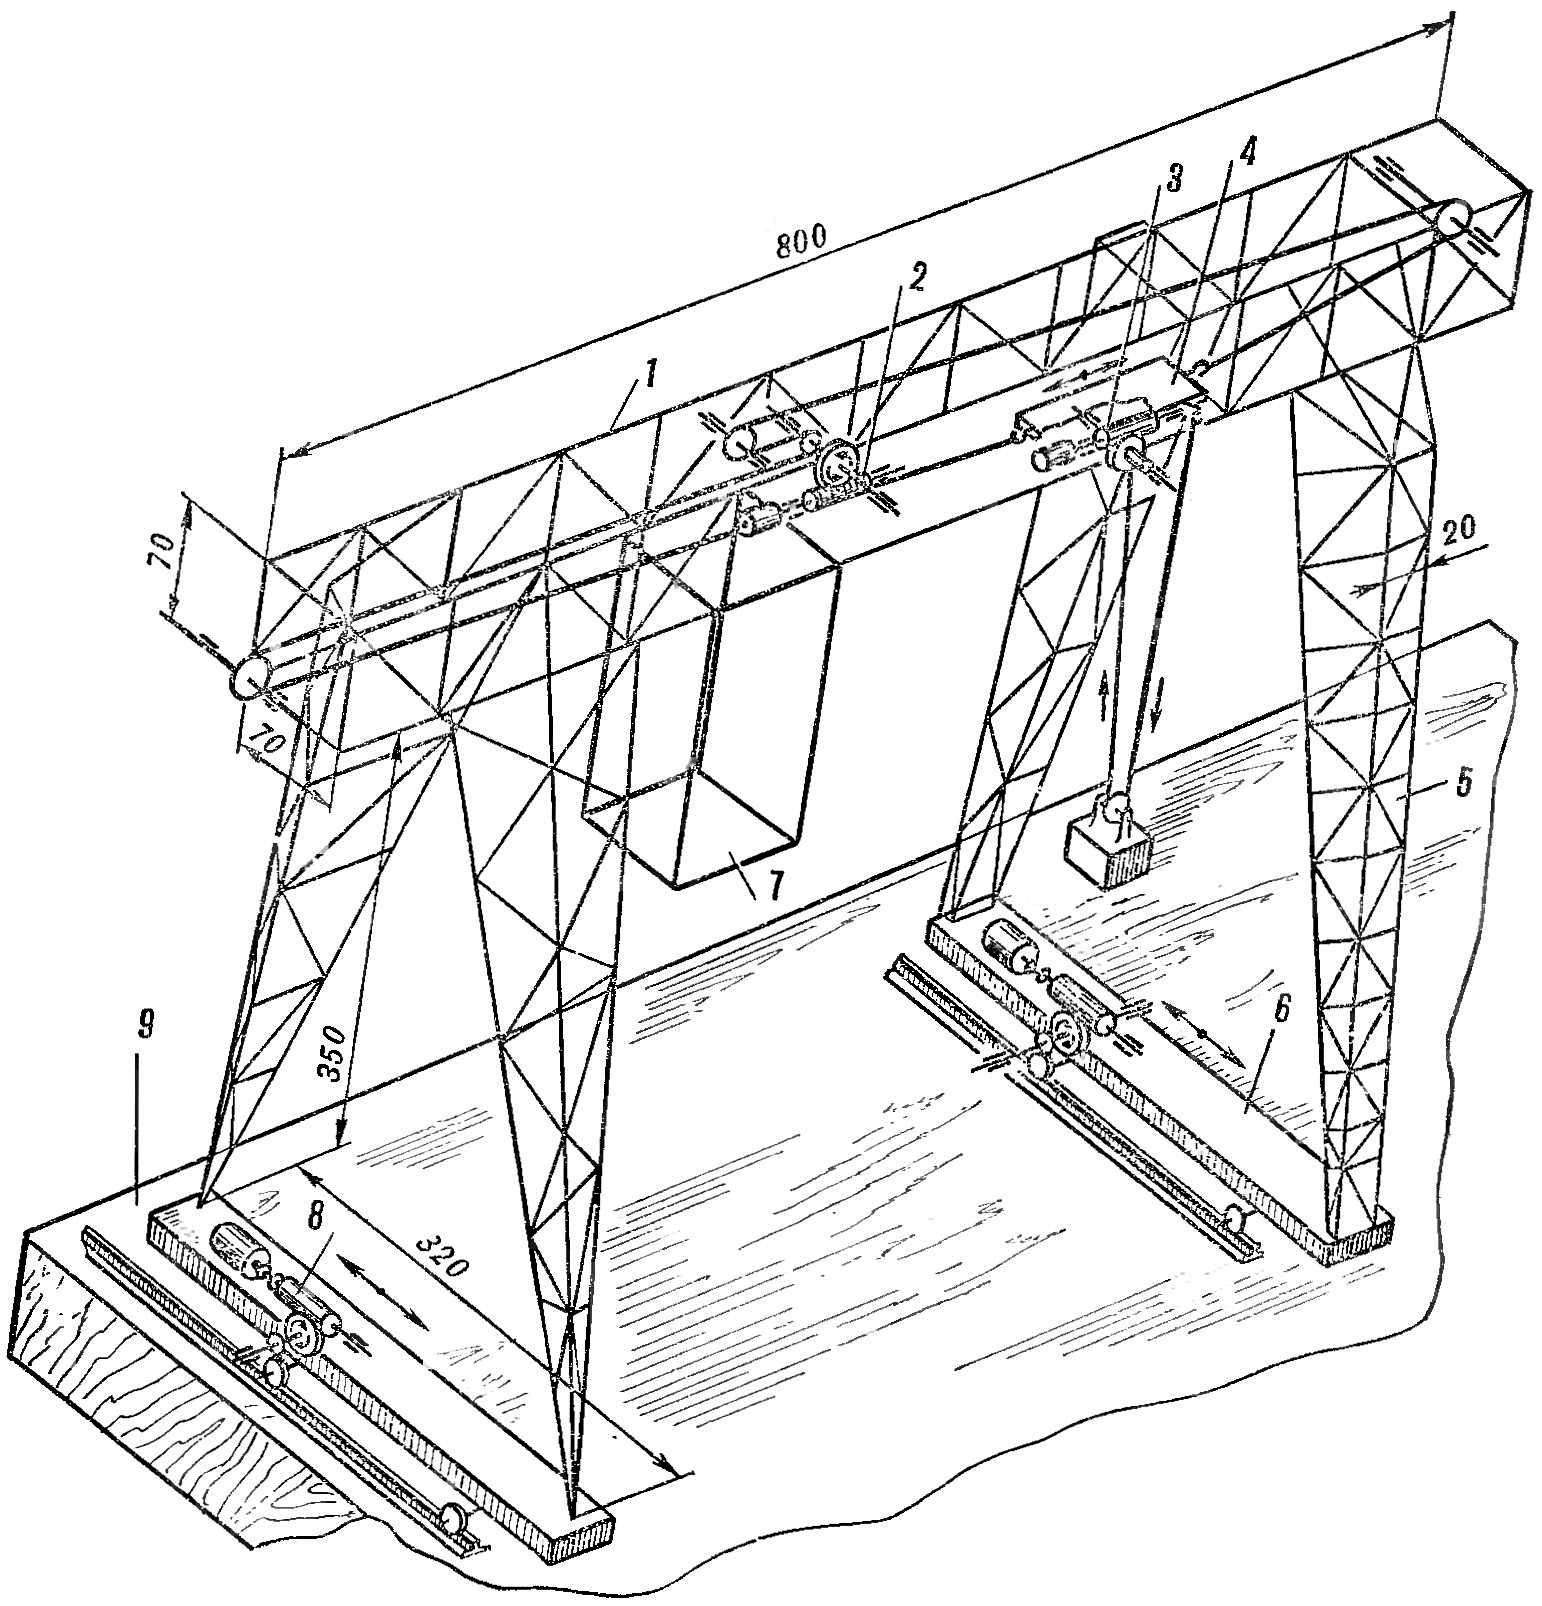 Fig. 1. Crane